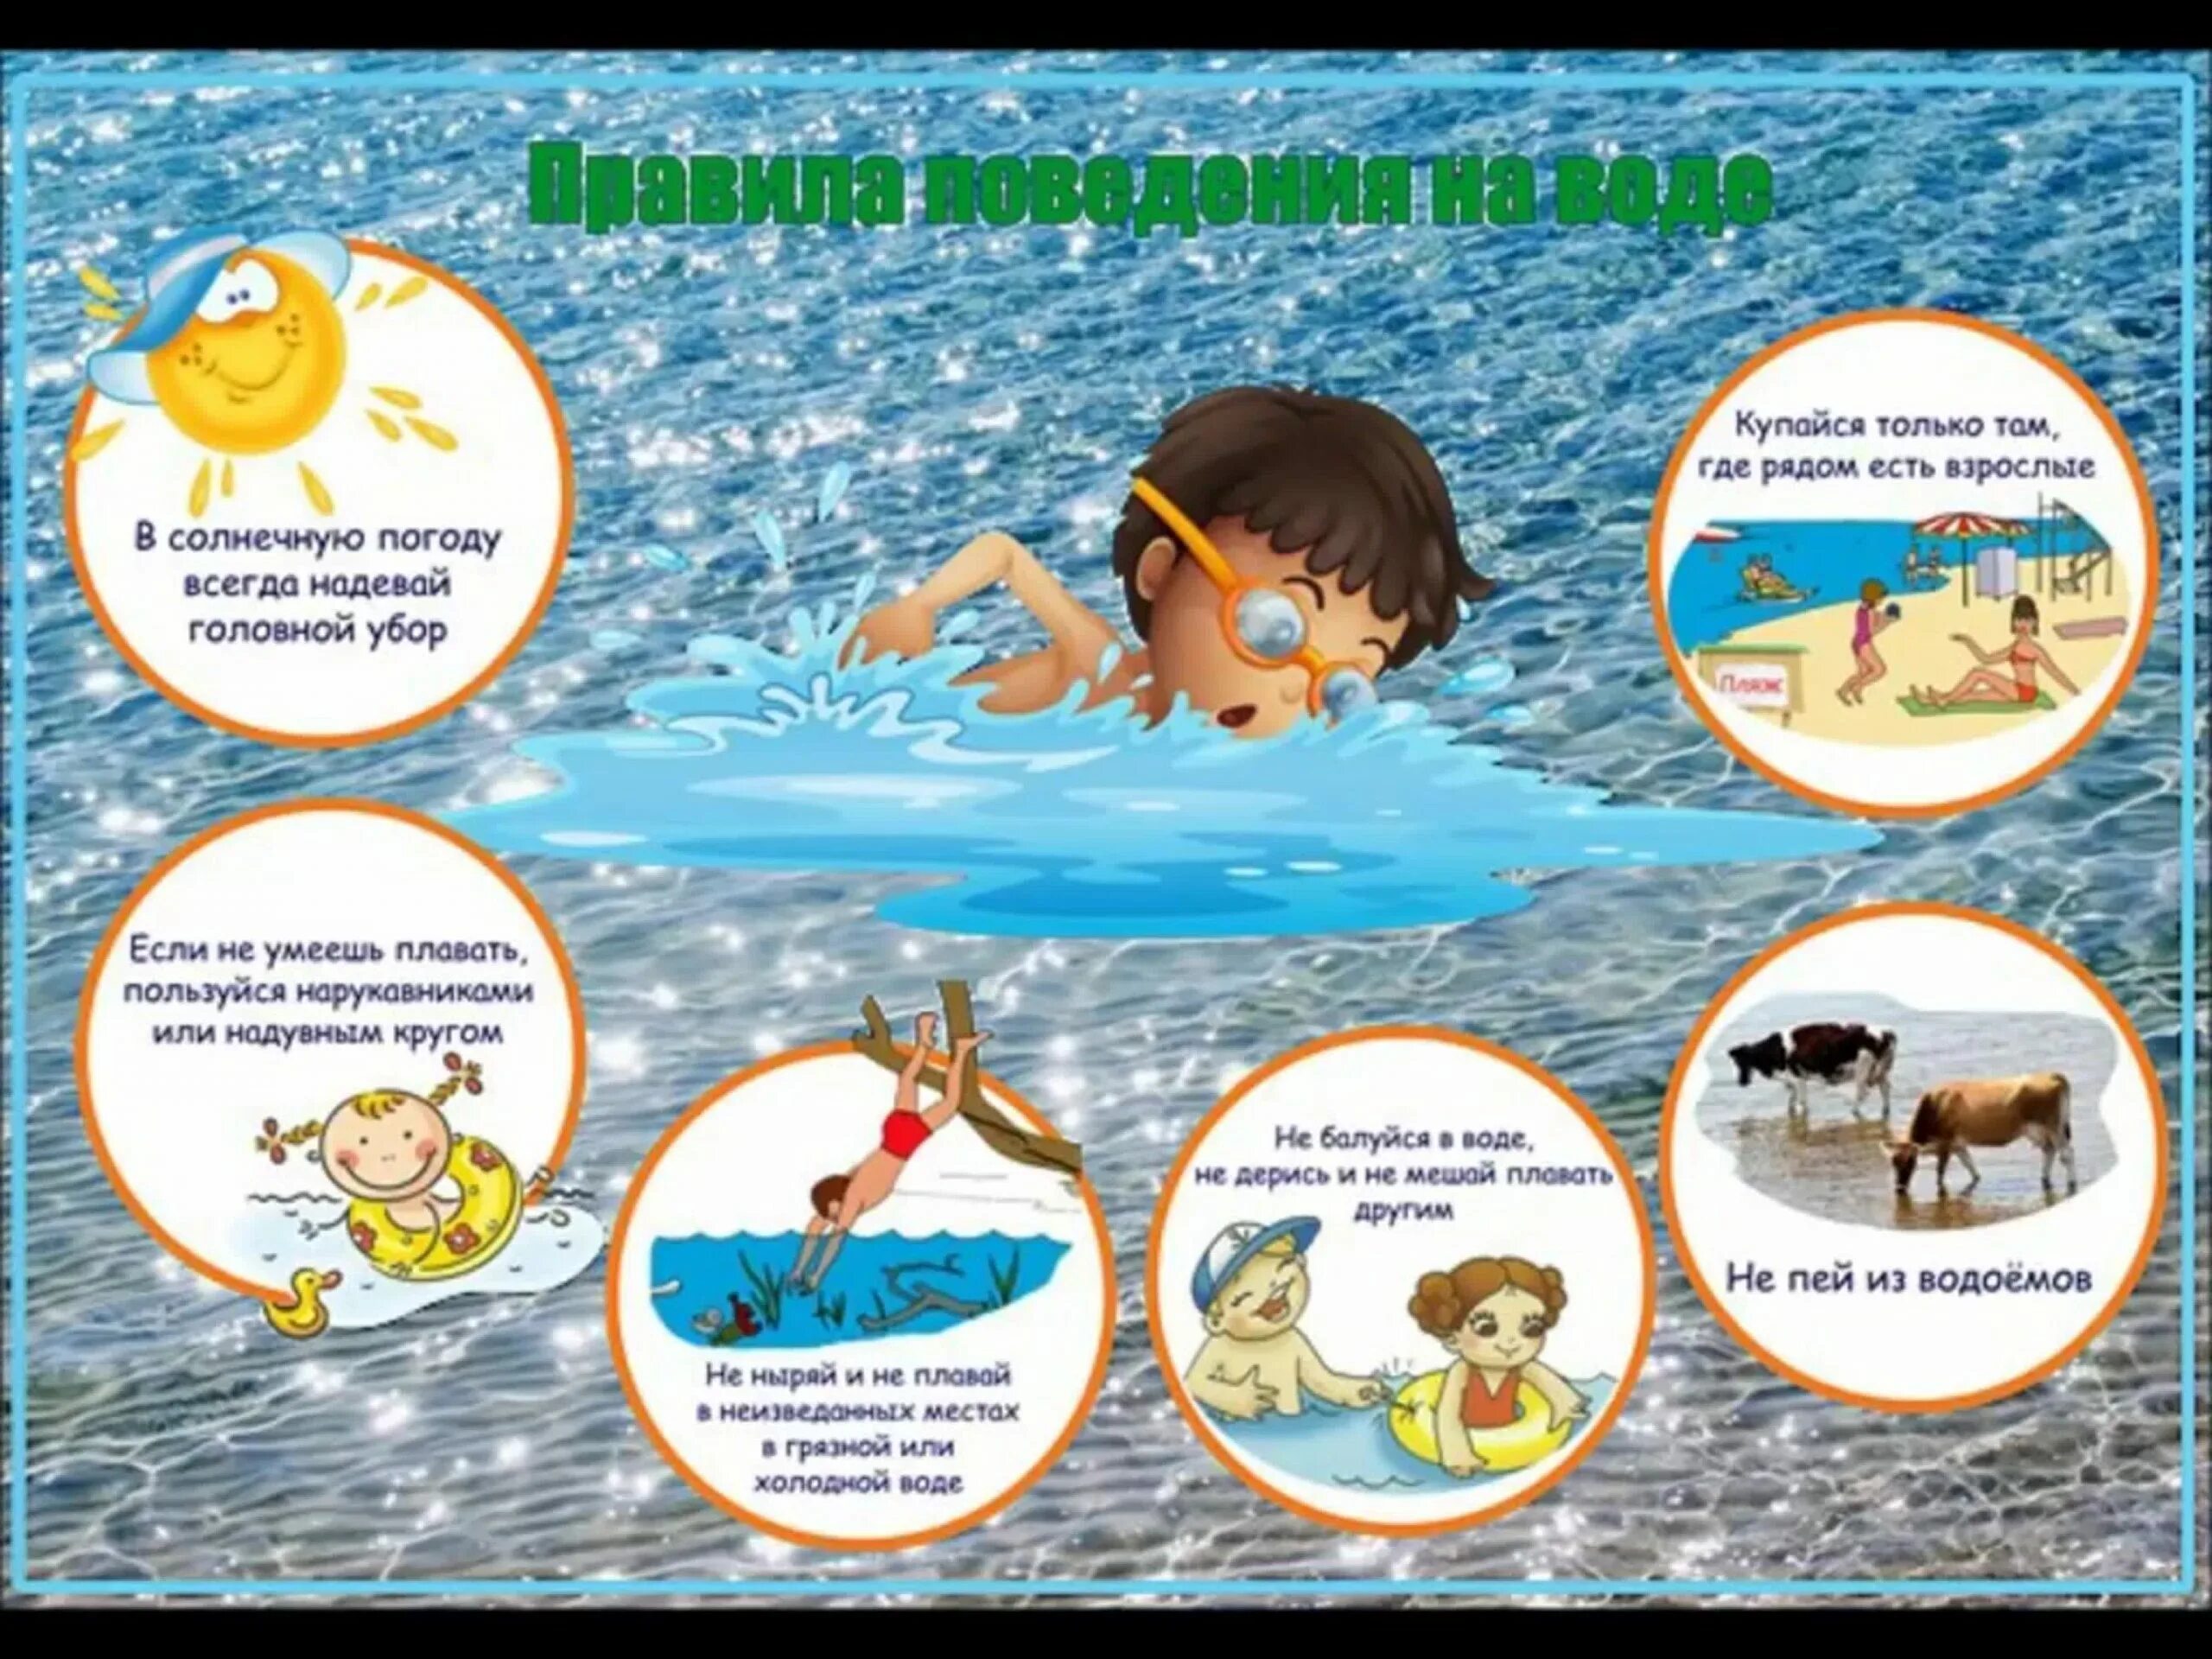 Безопасное поведение детей в летний период. Правила поведения на воде. Правила поведения навводе. Праавило поведение на воде. Правила безопасности на воде.